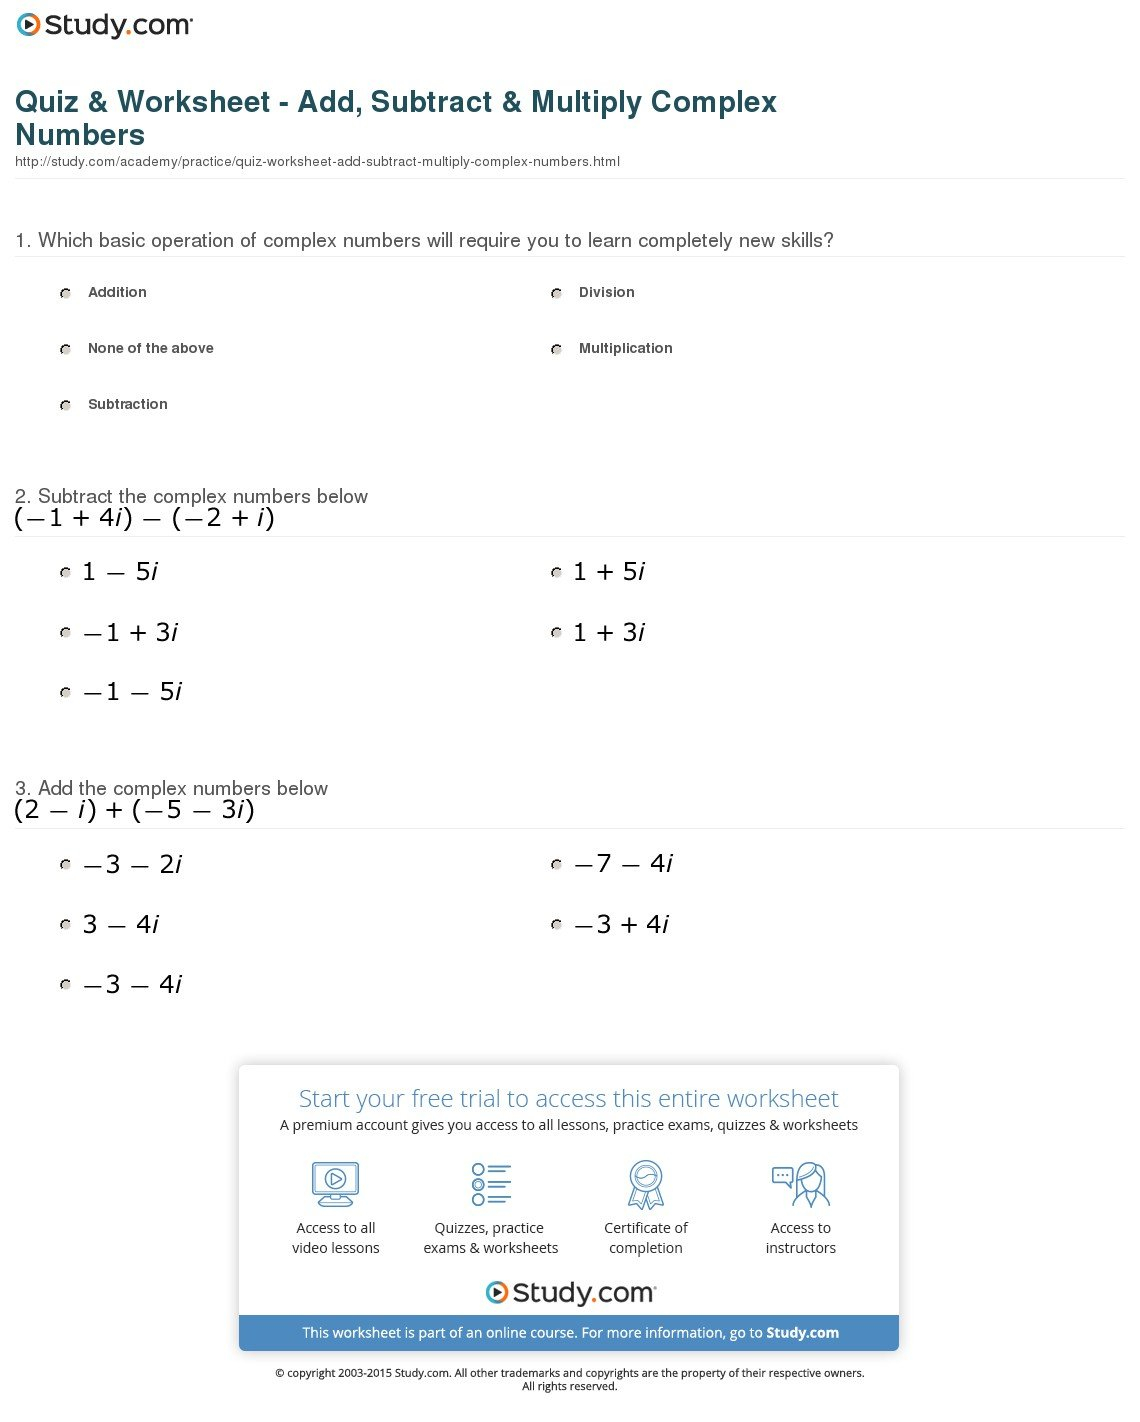 Multiplying Complex Numbers Worksheet  Yooob Regarding Multiplying Complex Numbers Worksheet